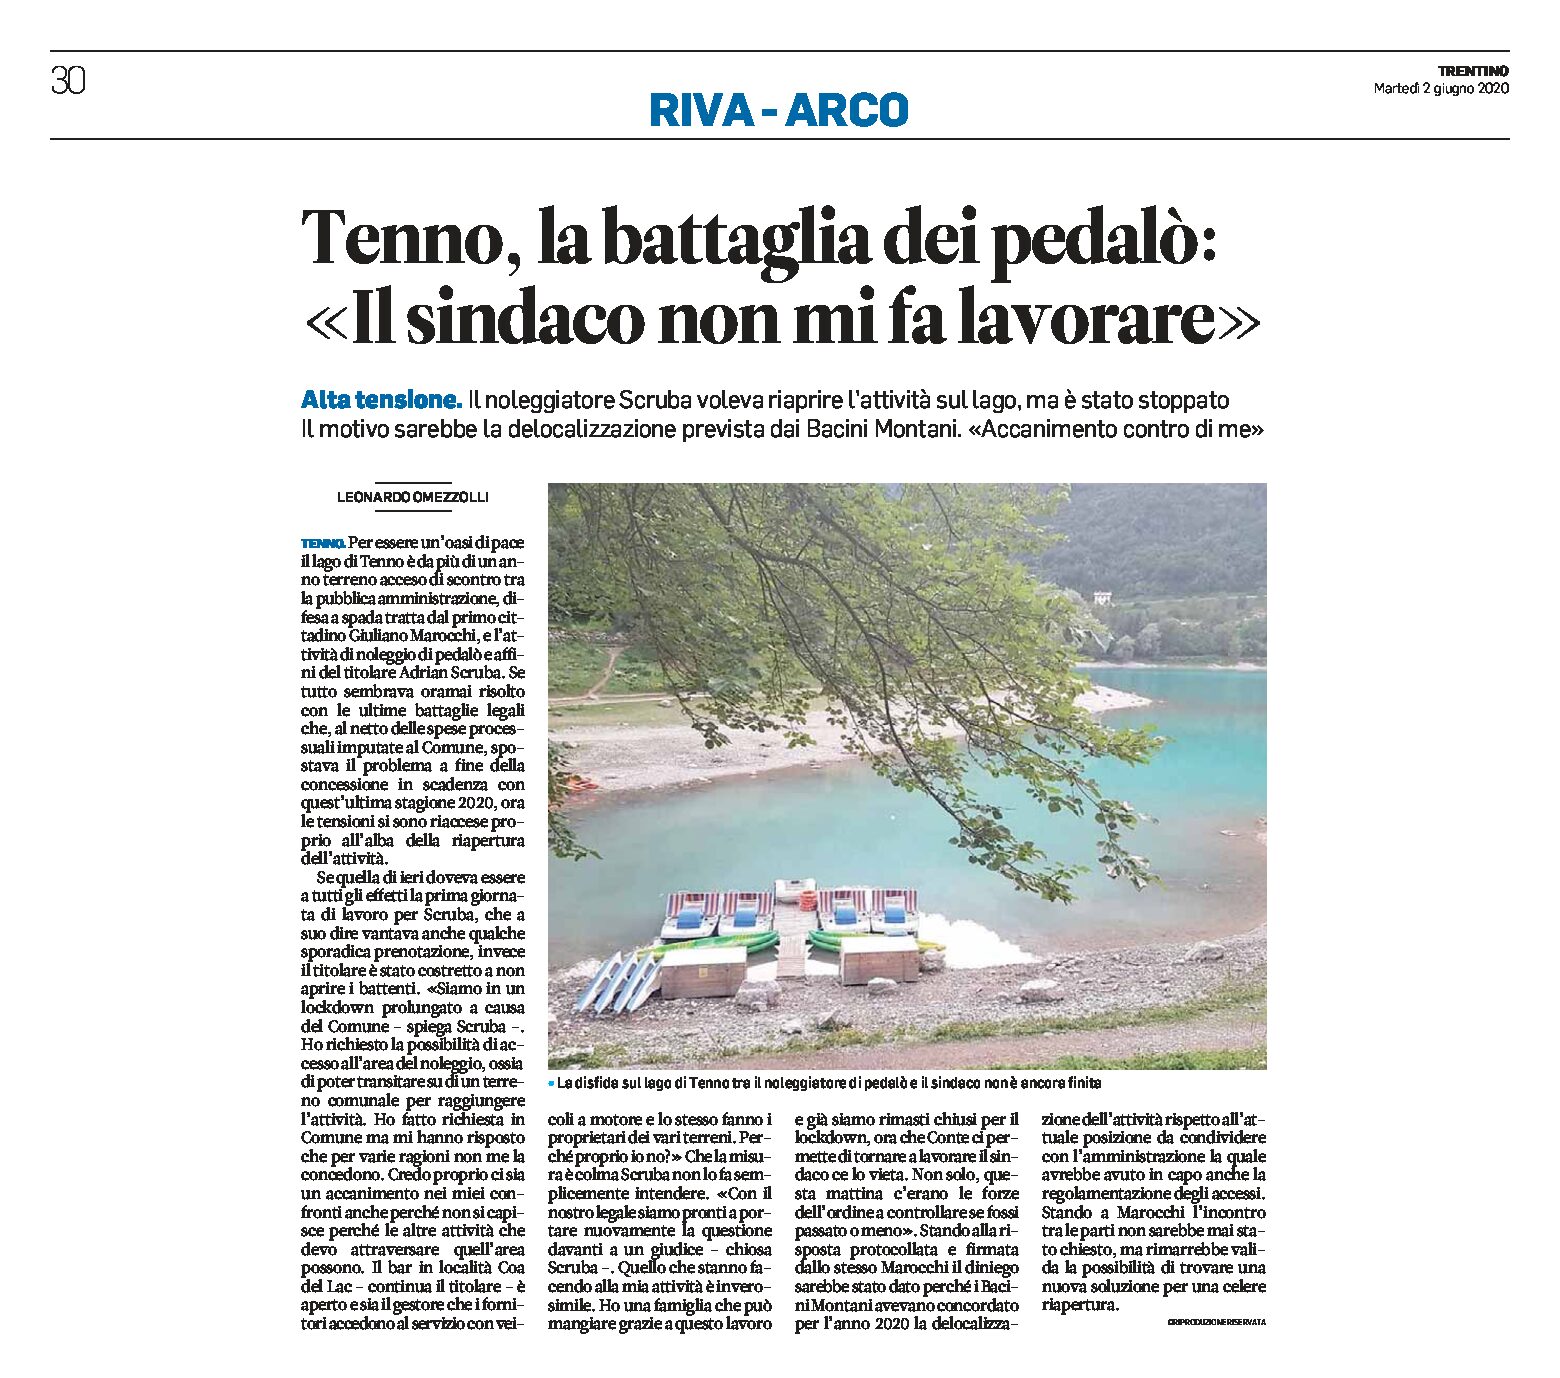 Lago di Tenno: la battaglia dei pedalò “il sindaco non mi fa lavorare”